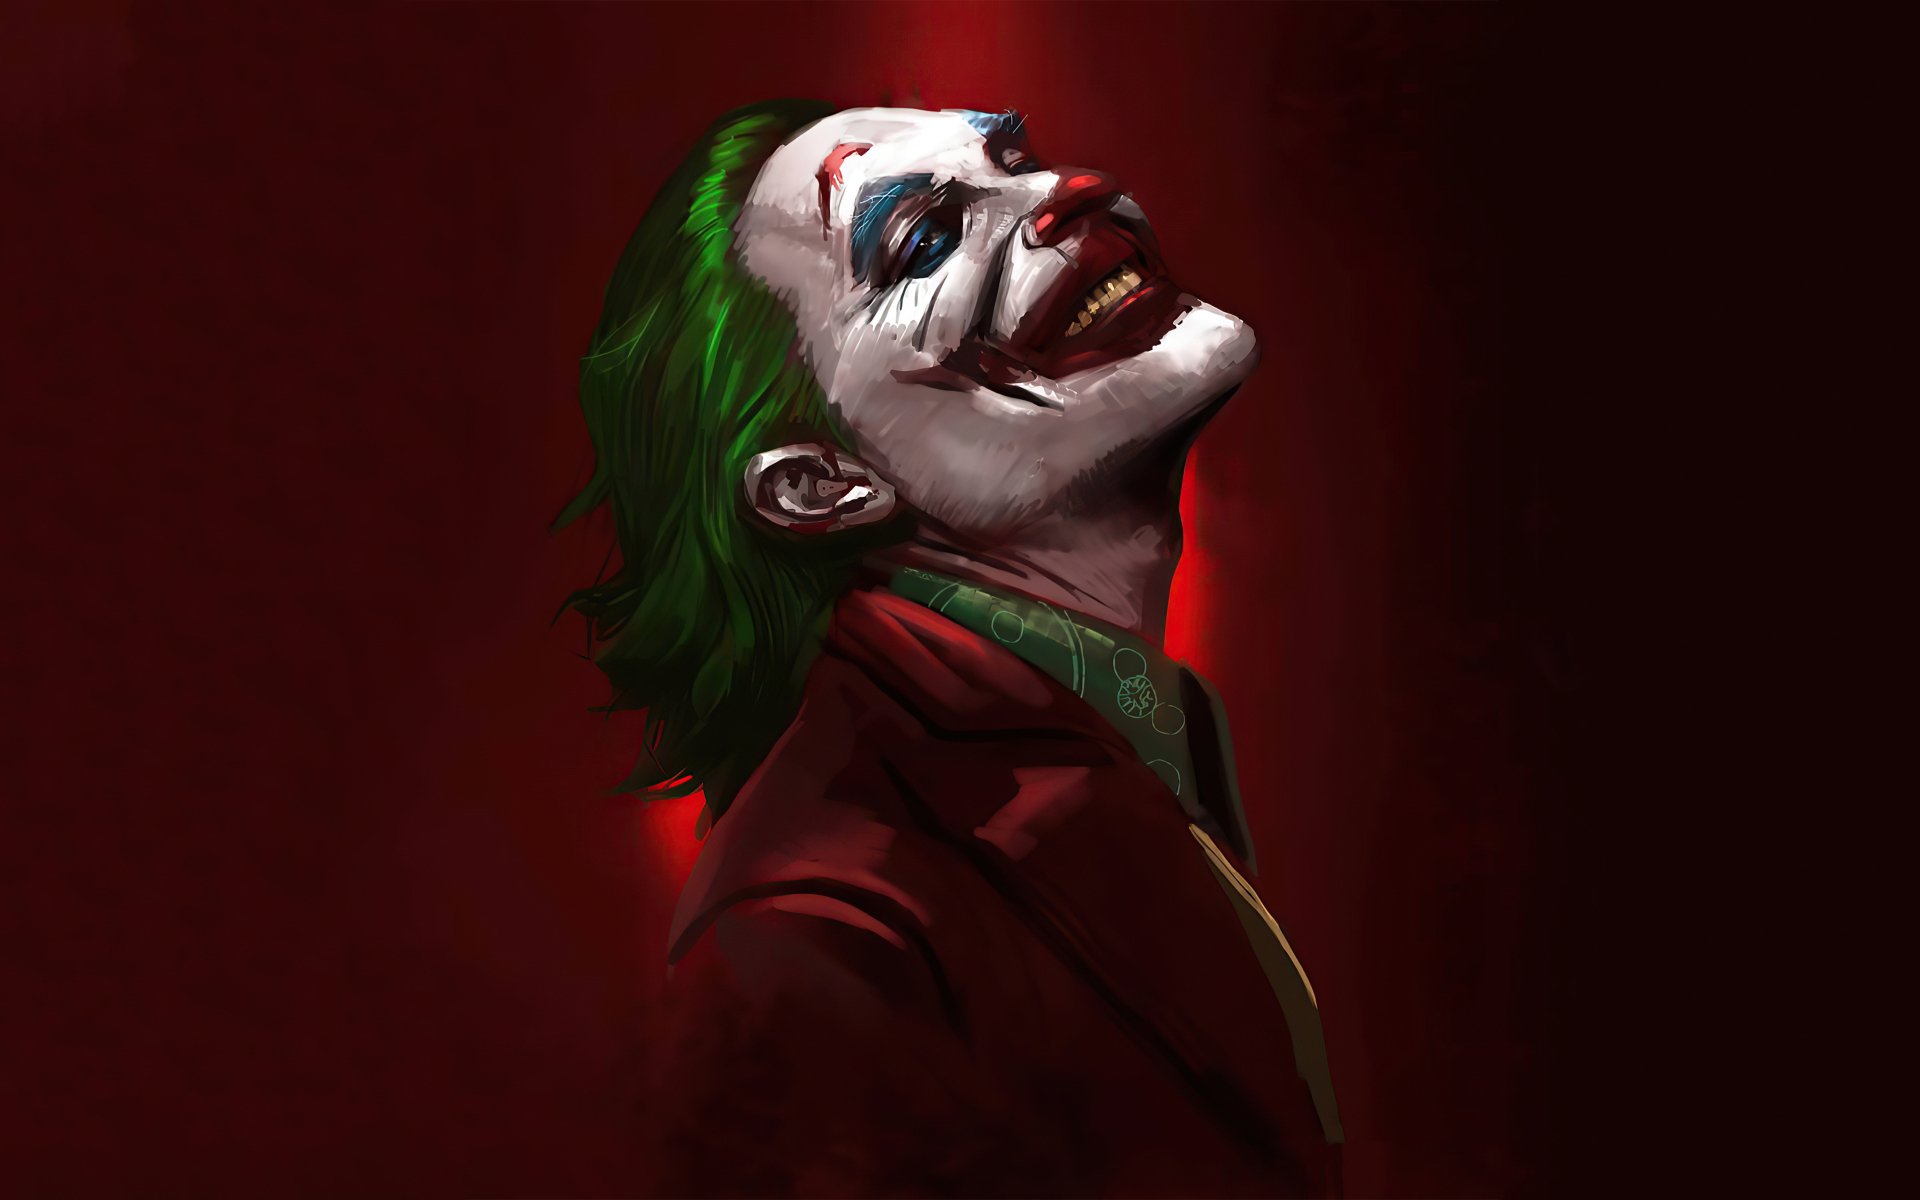 Joker 4k Ultra HD Wallpaper. 